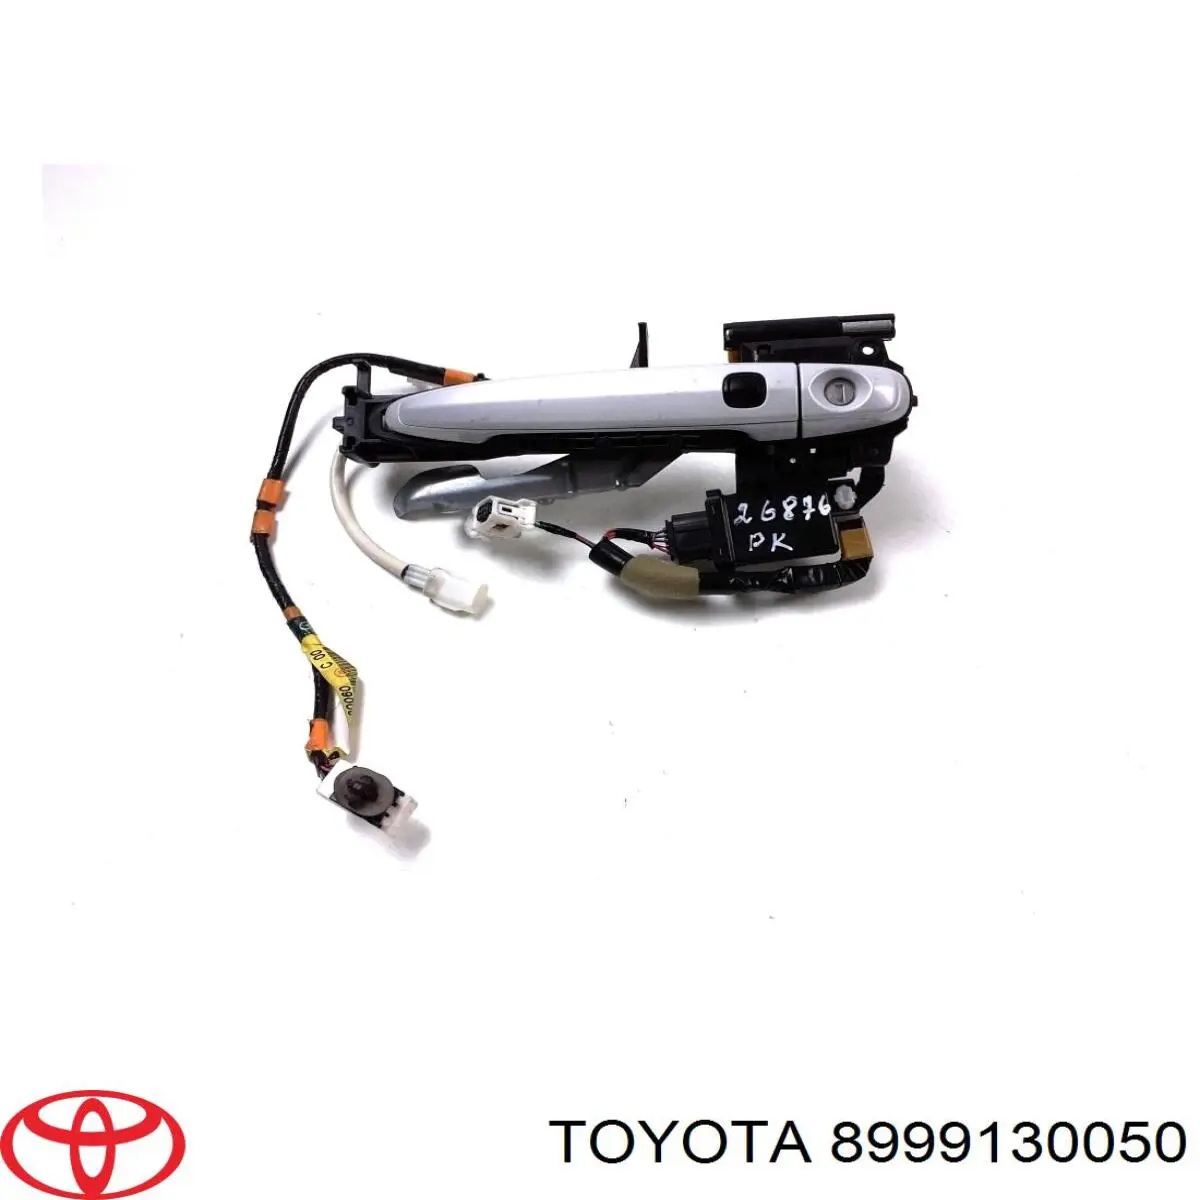 8999130050 Toyota датчик бесключевого доступа двери (приемник ключа)